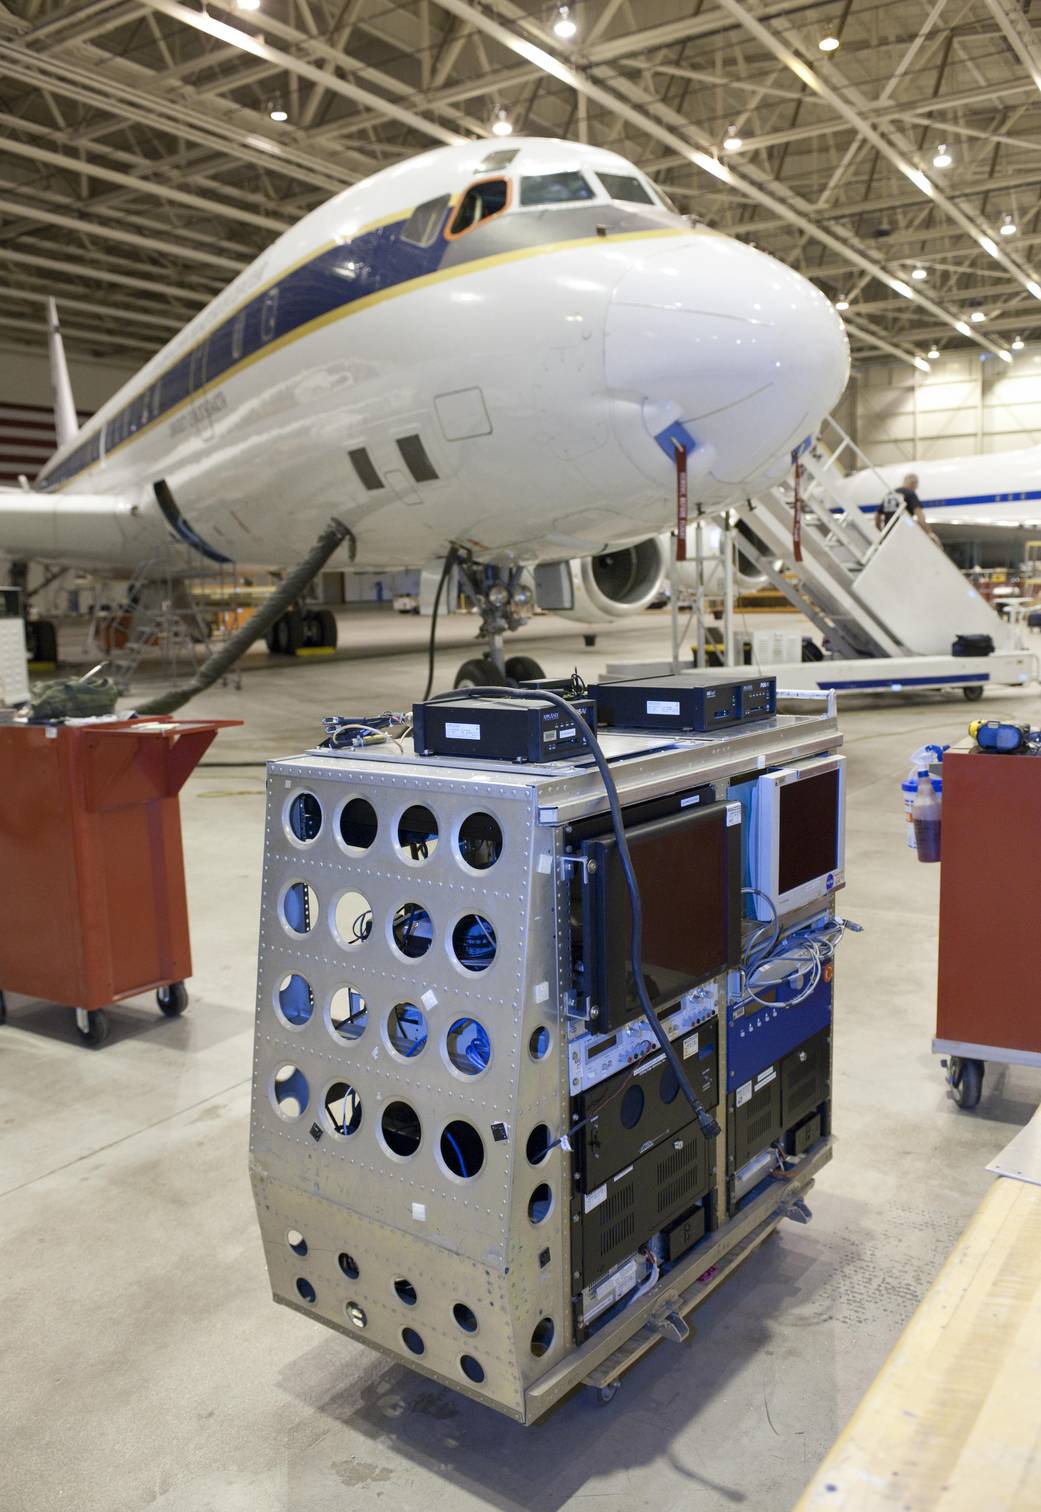 Laser Vegetation Imaging Sensor Installed in DC-8 